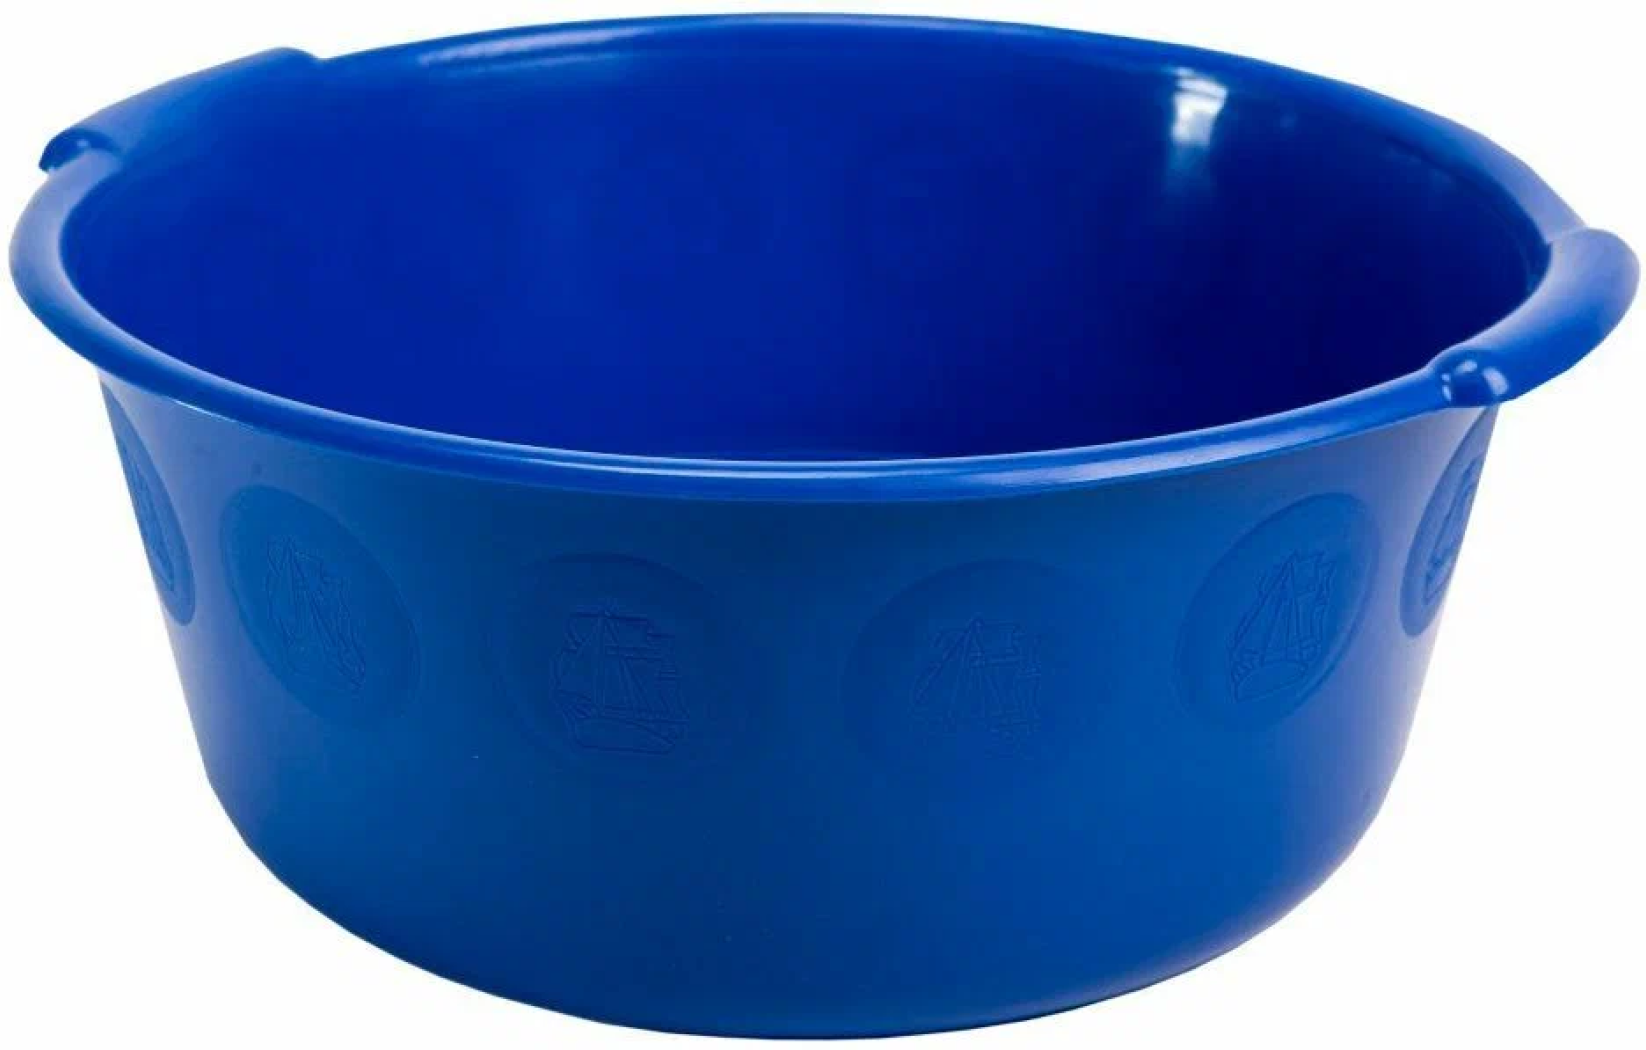 Тазик пластиковый круглый для стирки, объем 6 л, цвет синий. Благодаря круглой форме, тазик удобен для стирки, уборки и других домашних дел